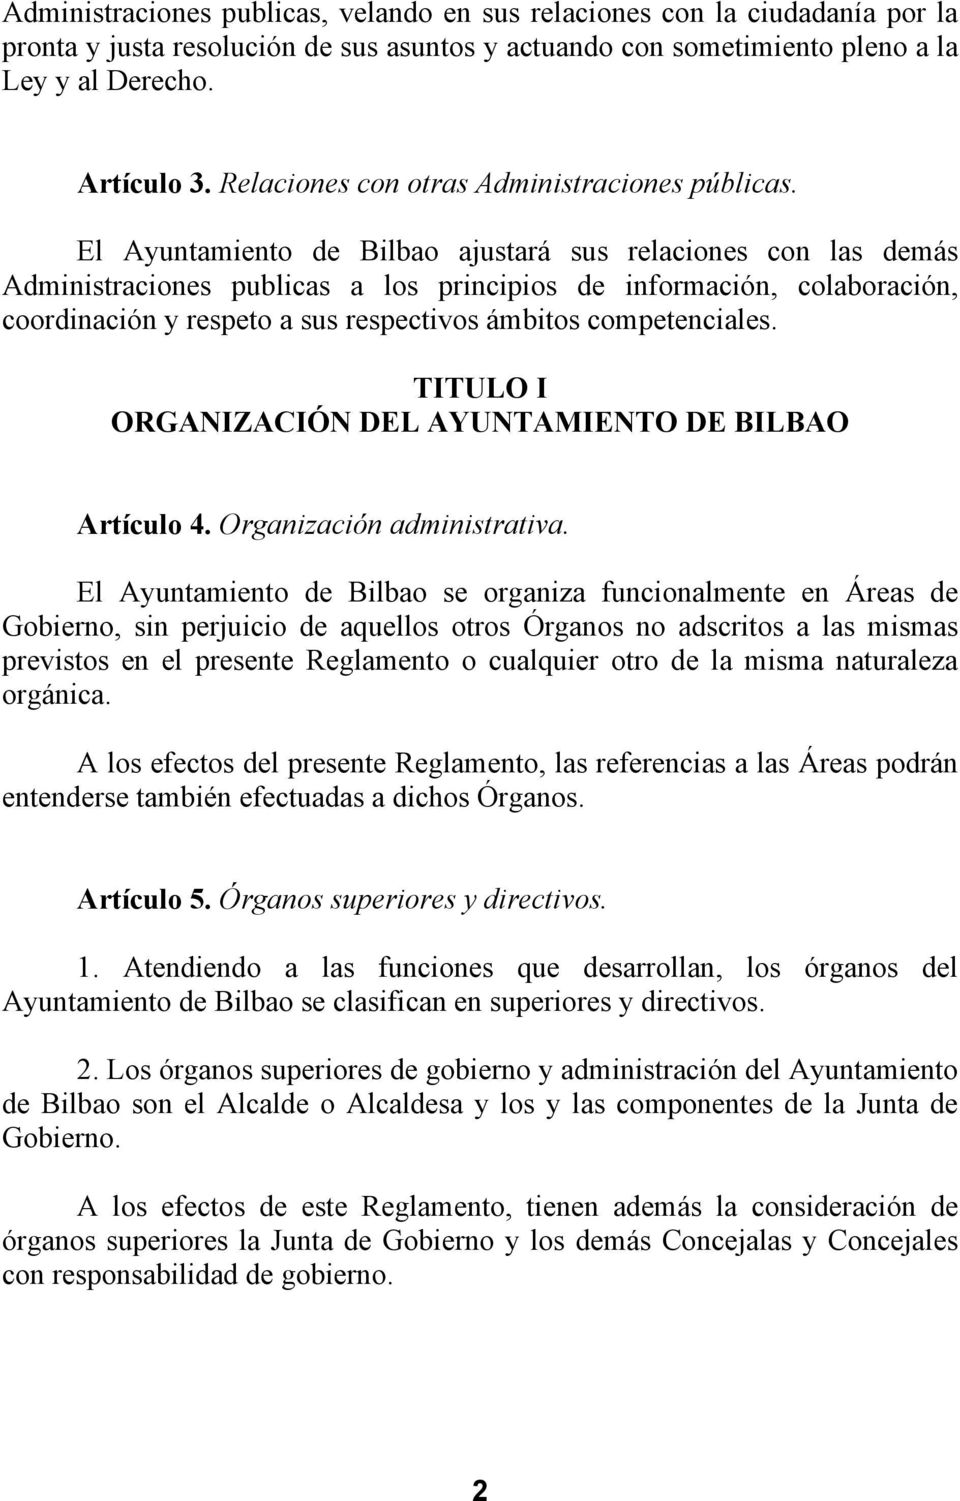 El Ayuntamiento de Bilbao ajustará sus relaciones con las demás Administraciones publicas a los principios de información, colaboración, coordinación y respeto a sus respectivos ámbitos